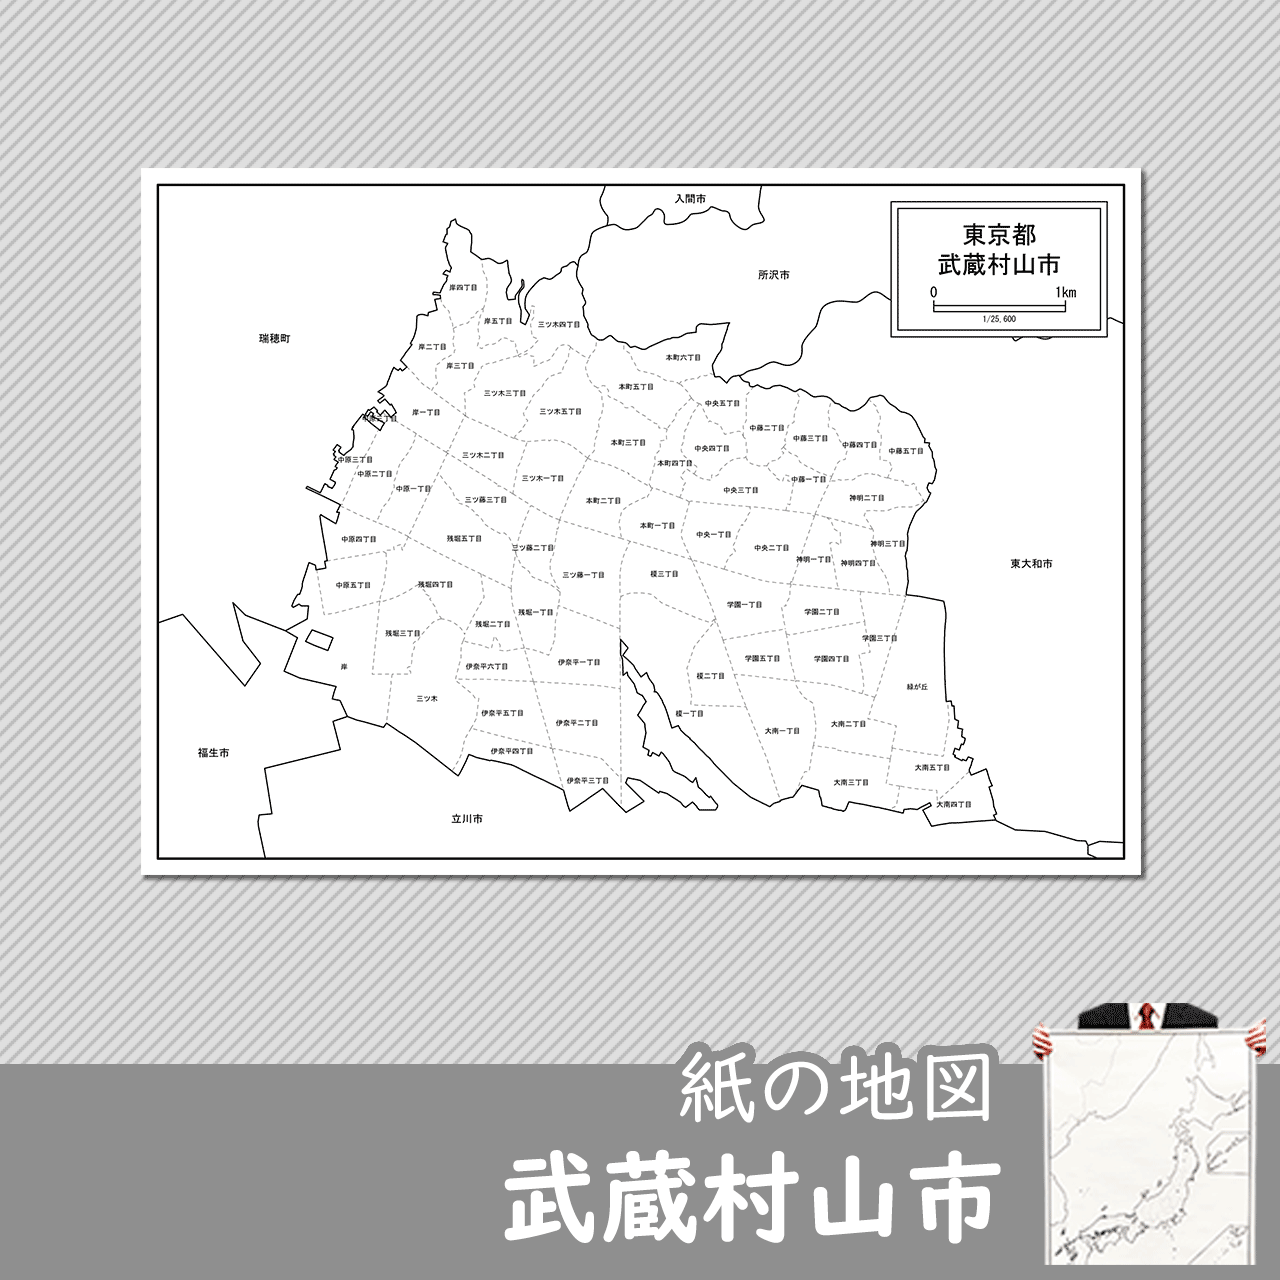 武蔵村山市の紙の白地図のサムネイル